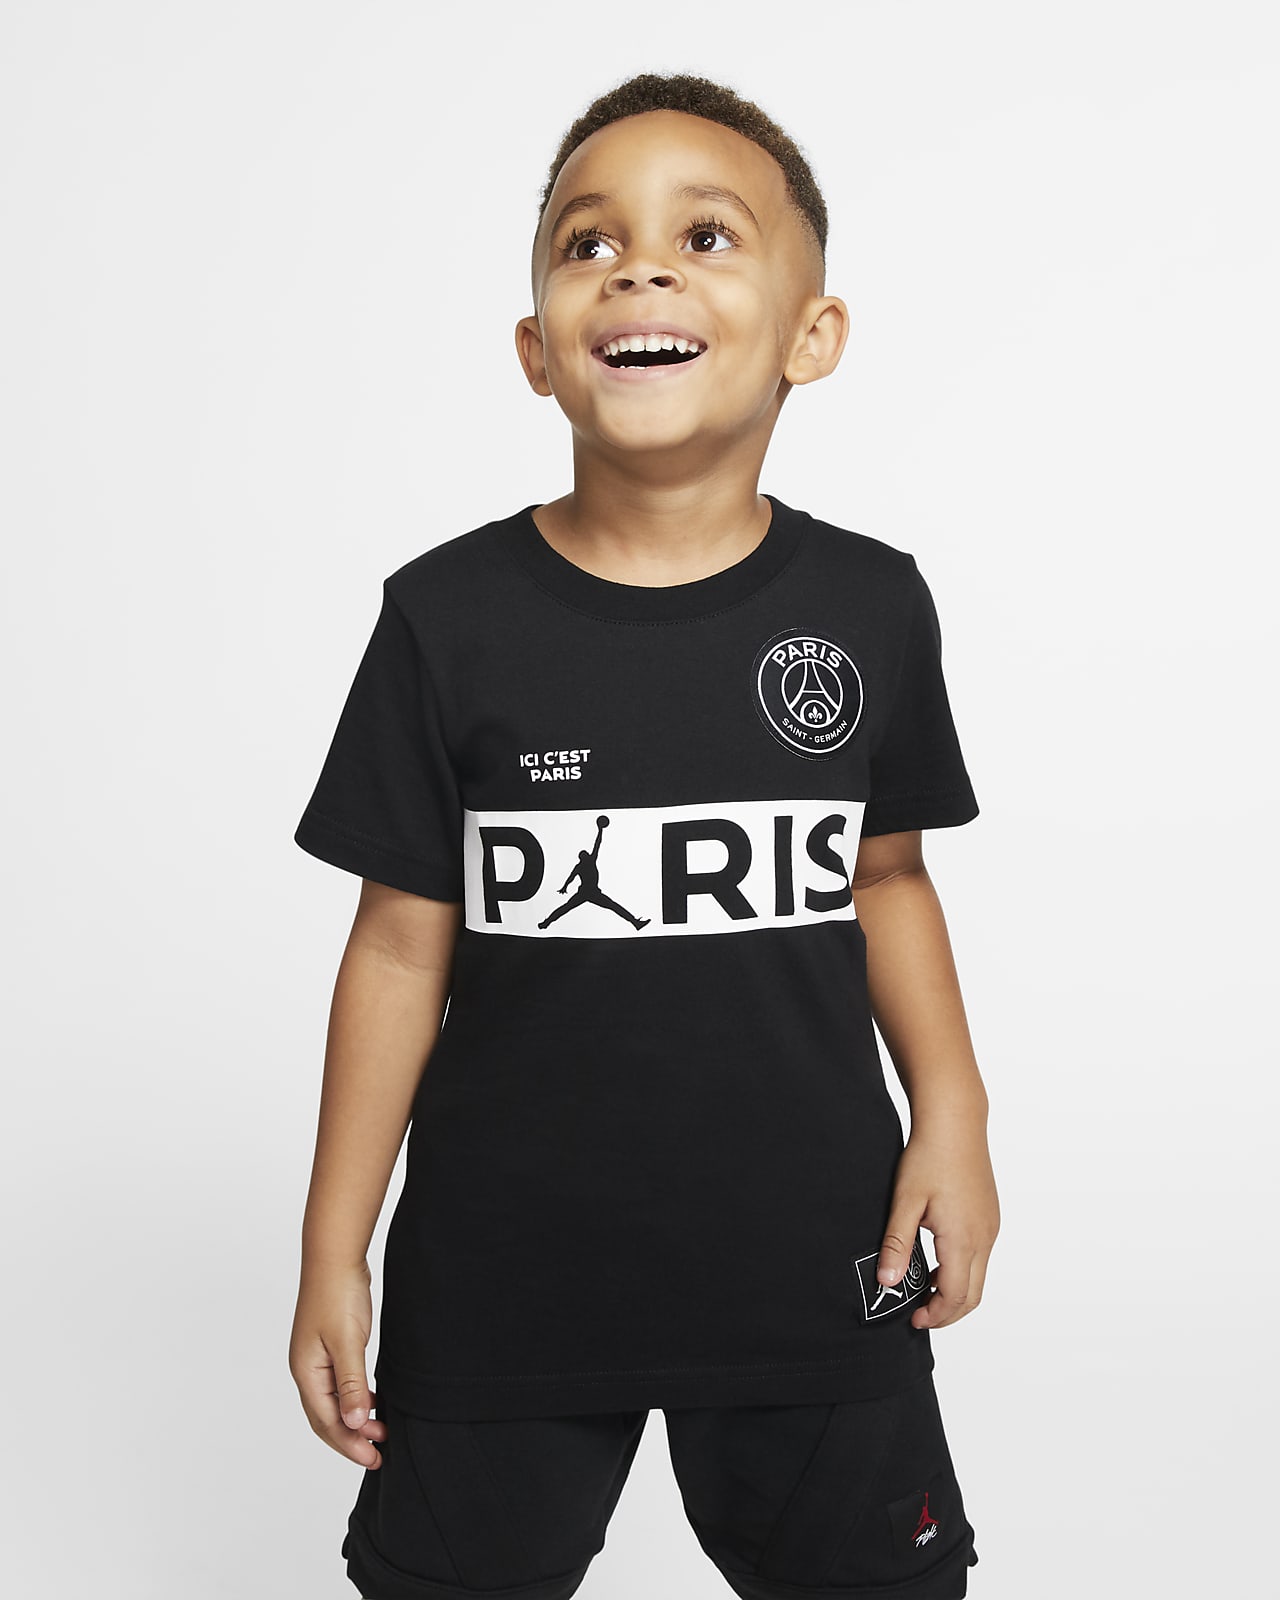 Tričko PSG s krátkým rukávem pro malé děti